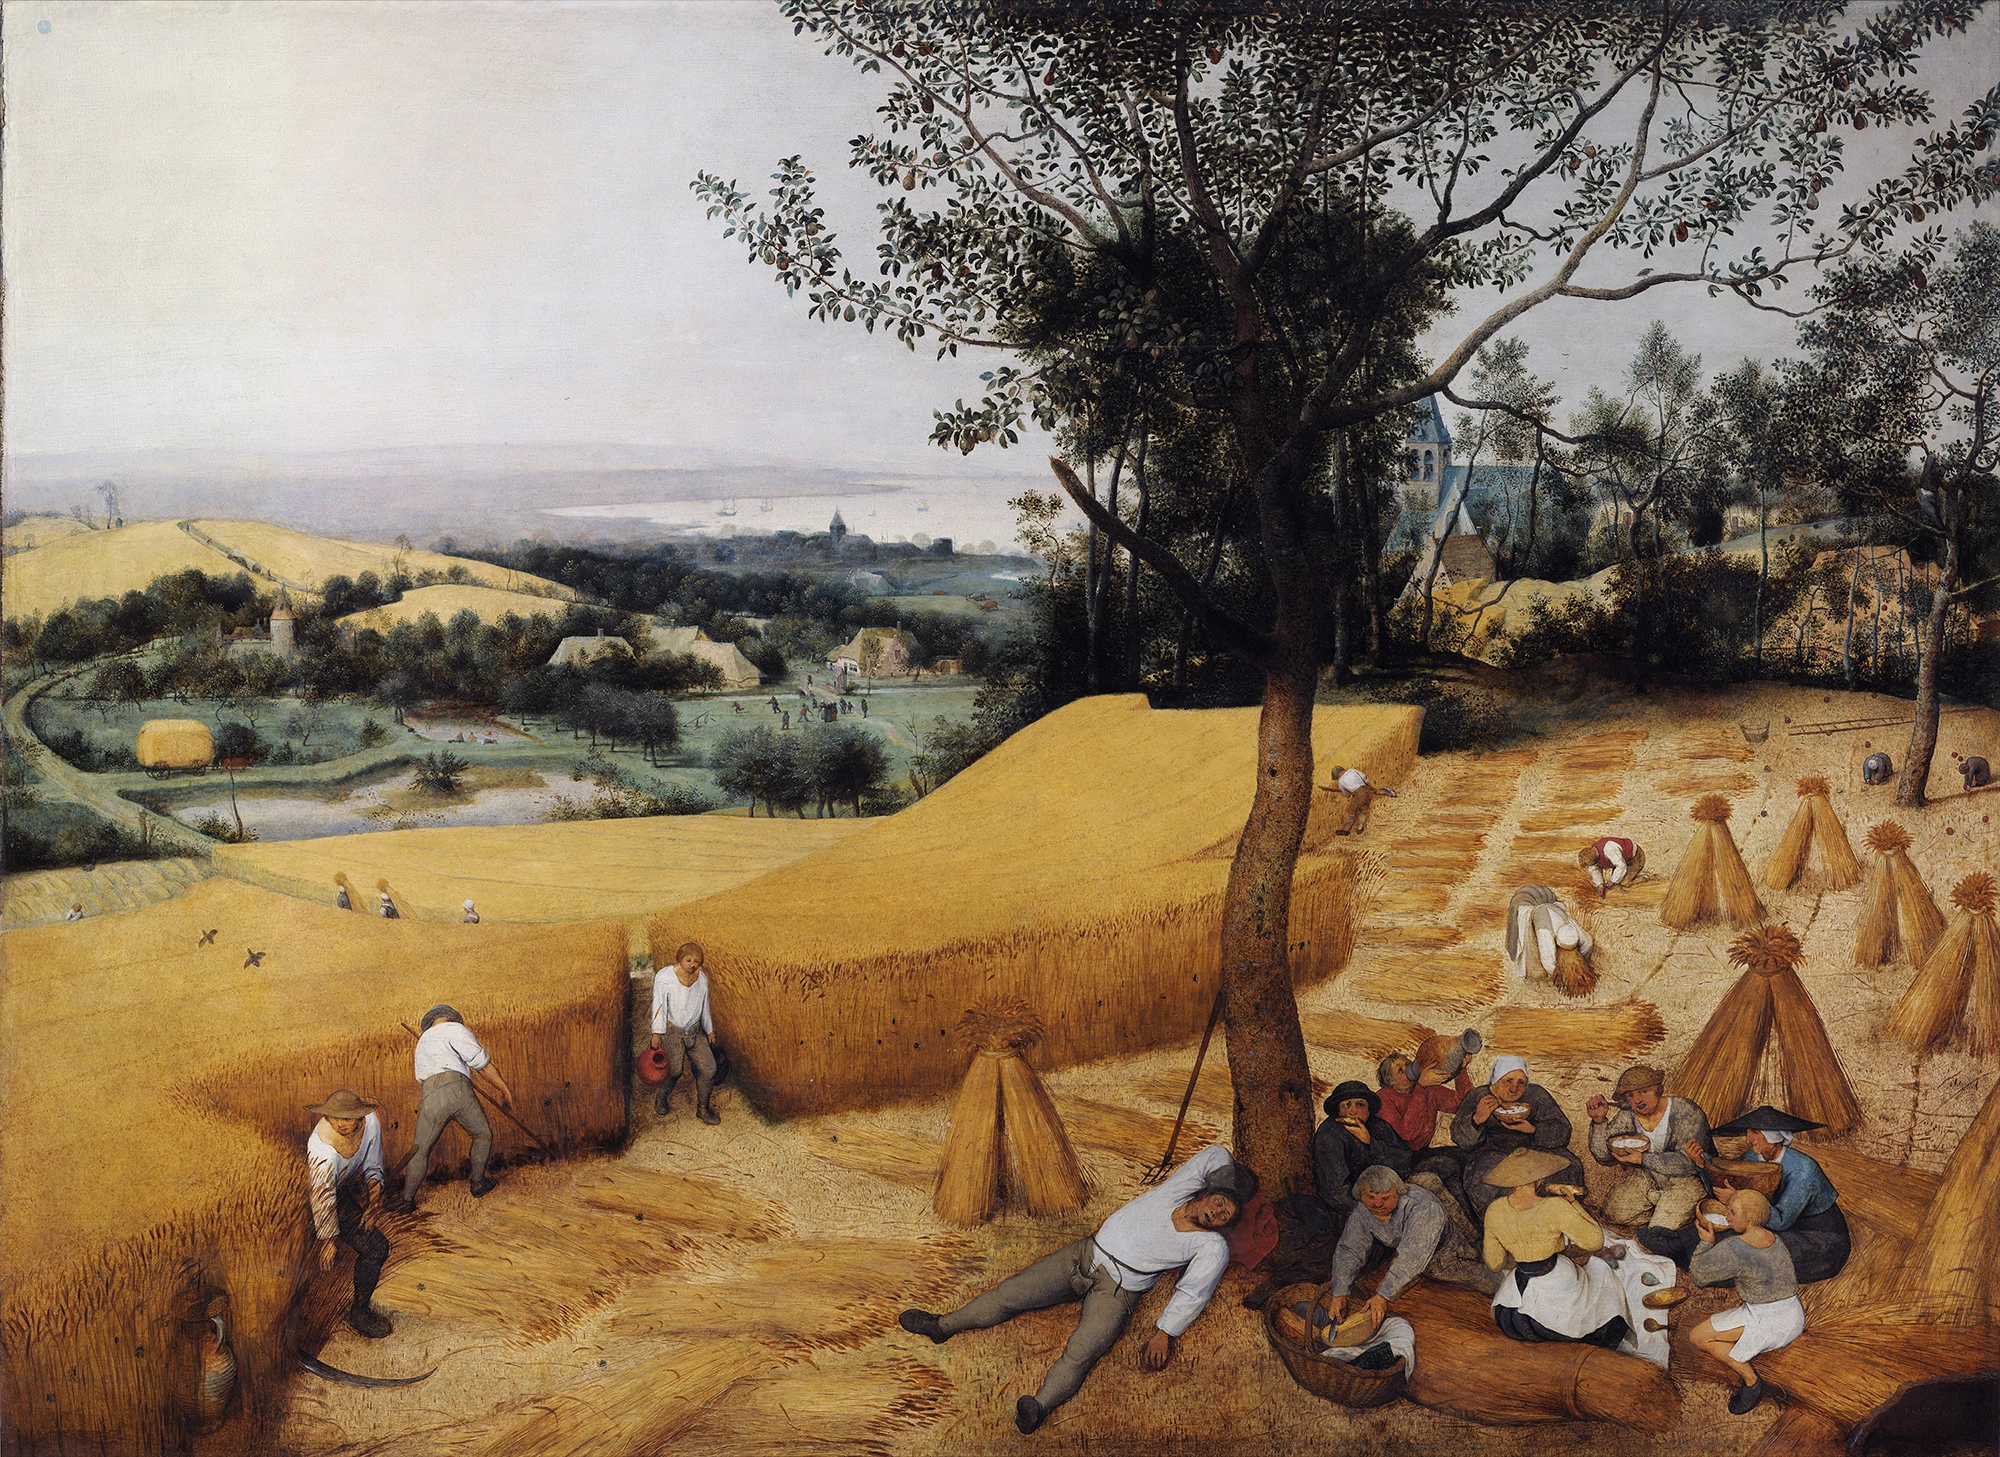 Pieter Bruegel the Elder, The Artists